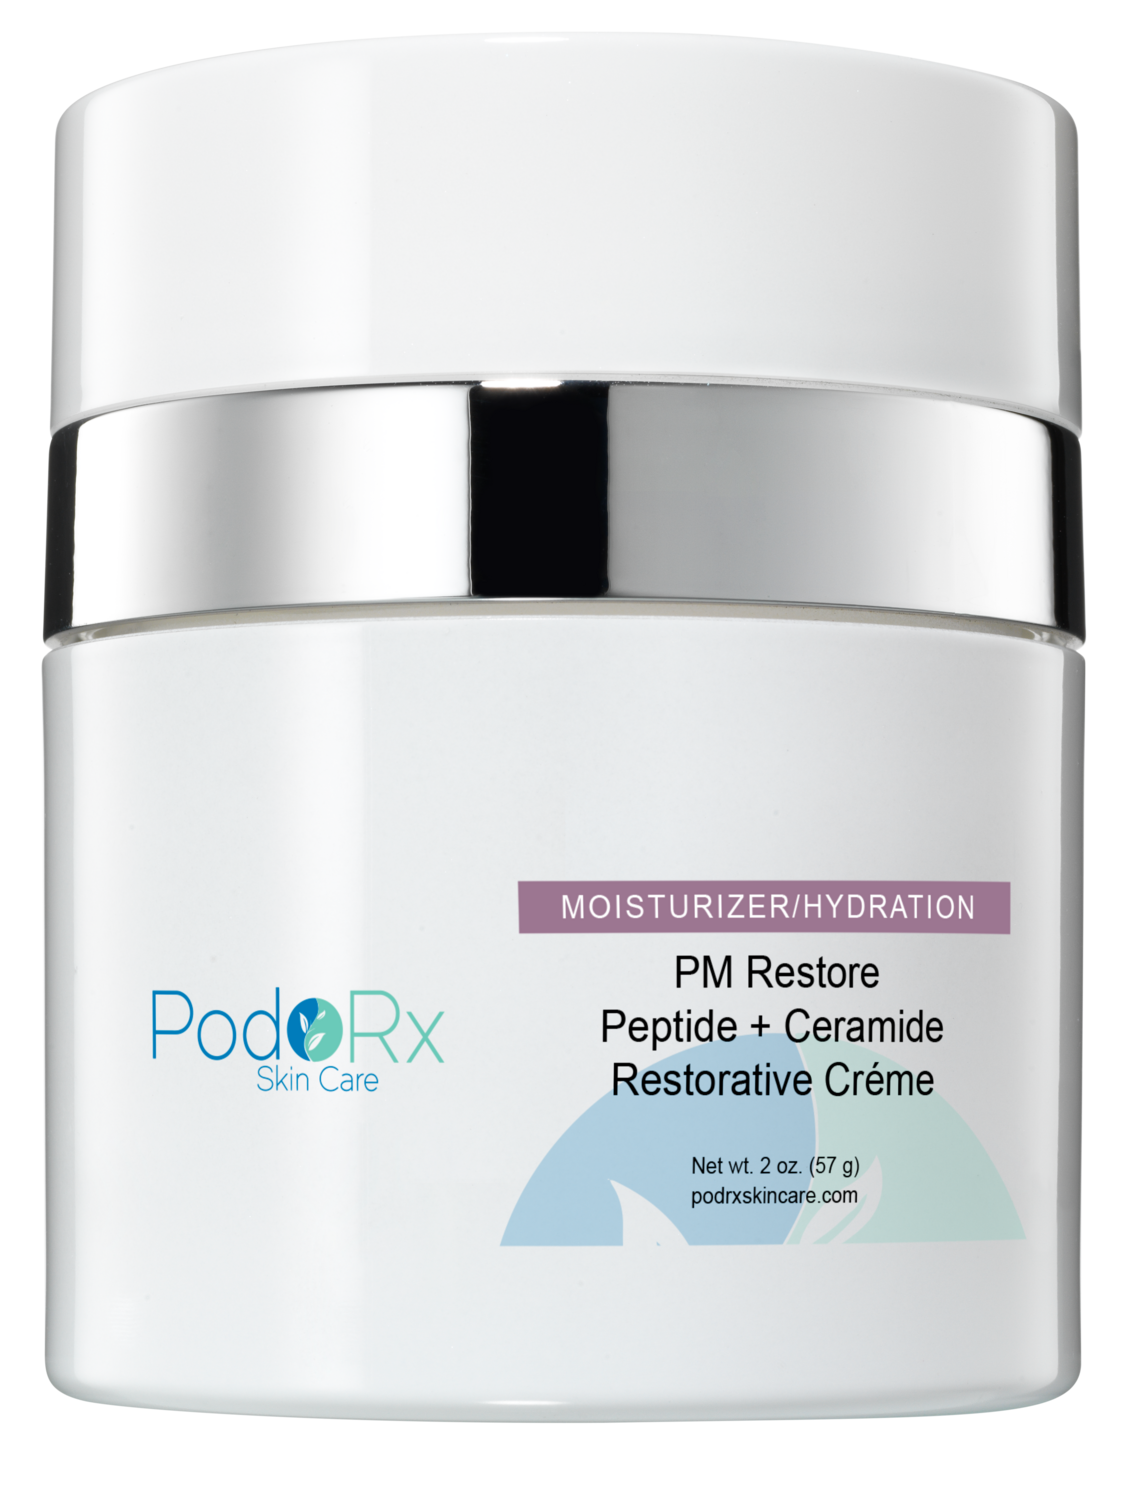 PM Restore Peptide + Ceramide Restorative Creme